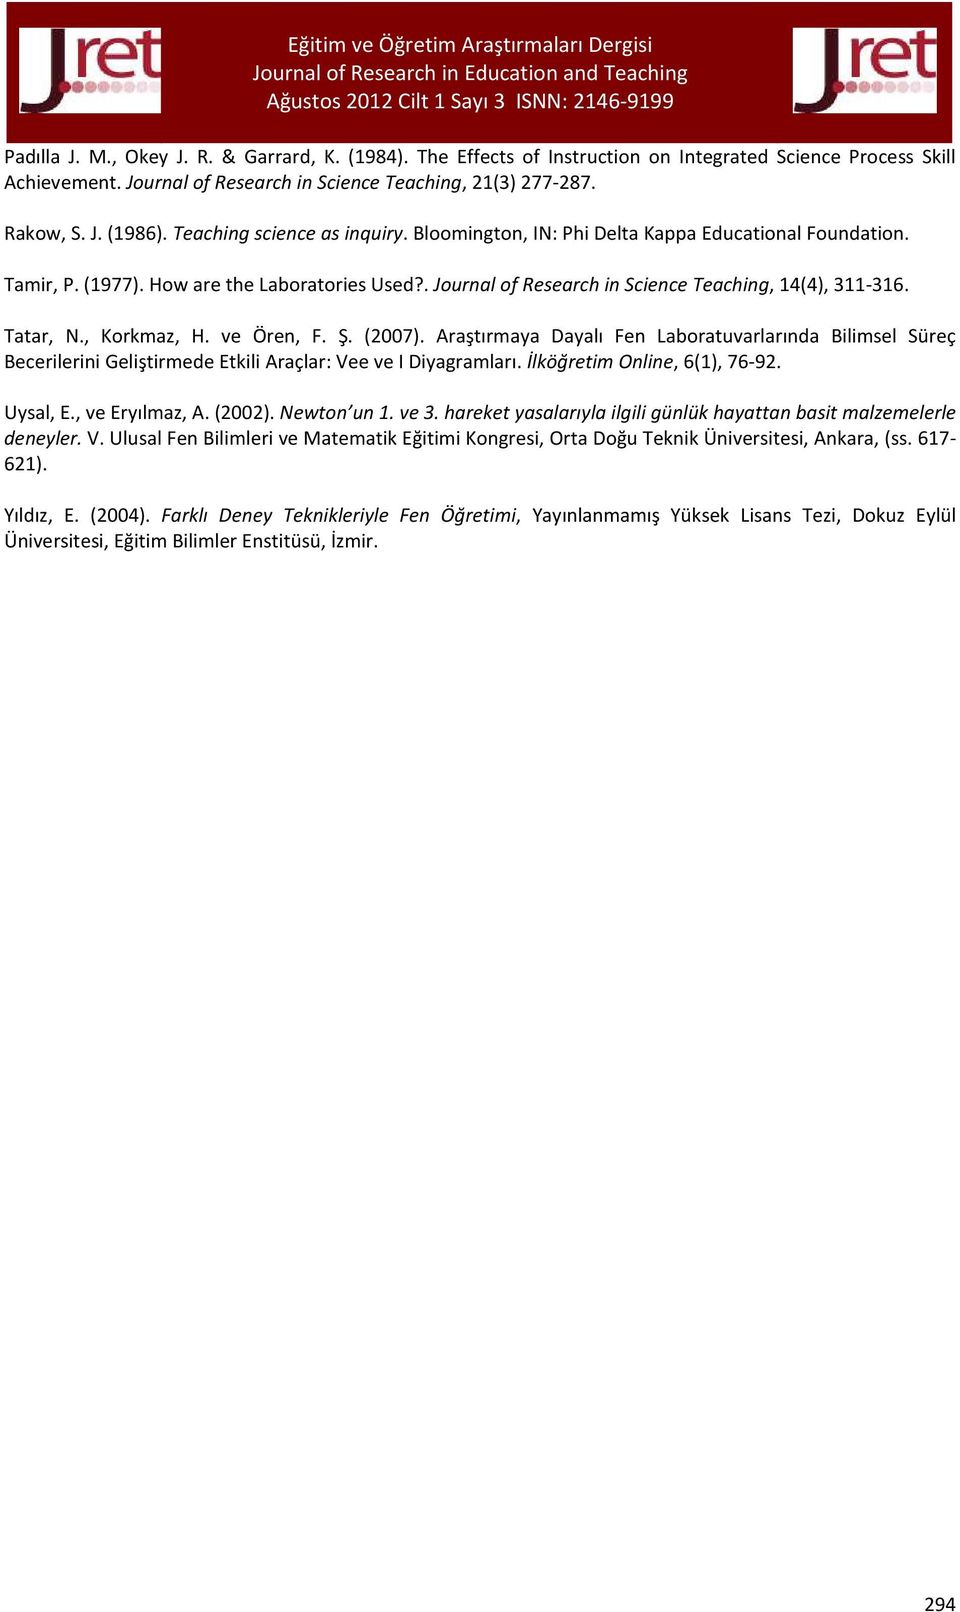 Tatar, N., Korkmaz, H. ve Ören, F. Ş. (2007). Araştırmaya Dayalı Fen Laboratuvarlarında Bilimsel Süreç Becerilerini Geliştirmede Etkili Araçlar: Vee ve I Diyagramları. İlköğretim Online, 6(1), 76-92.